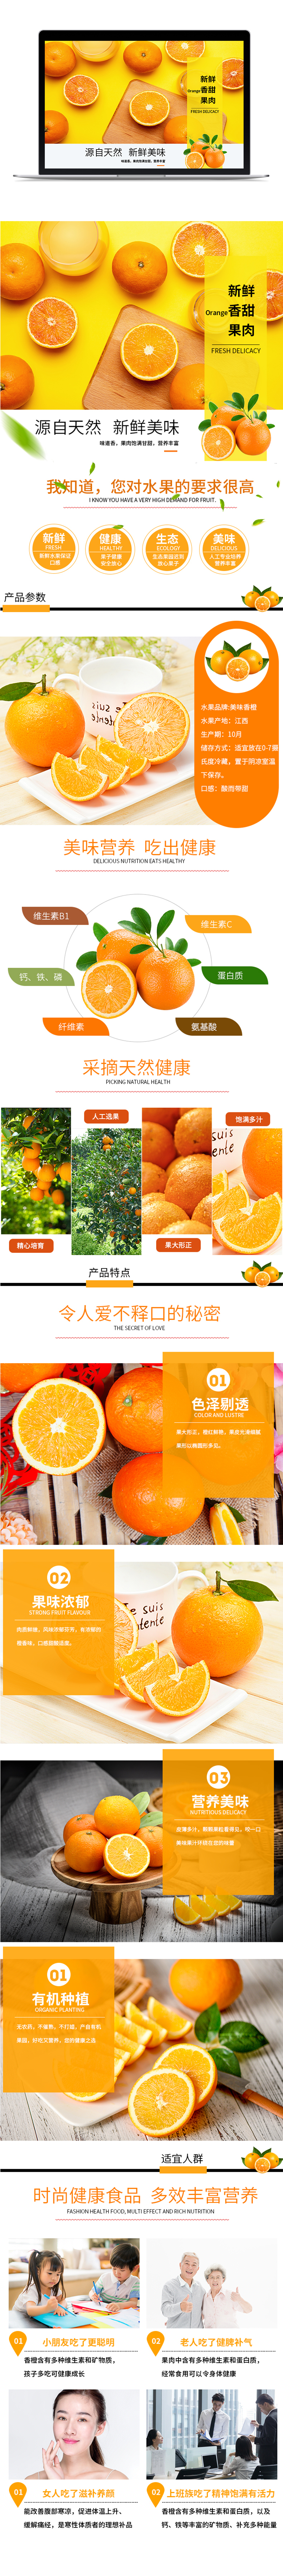 淘宝美工y173529水果橙子促销淘宝详情页作品